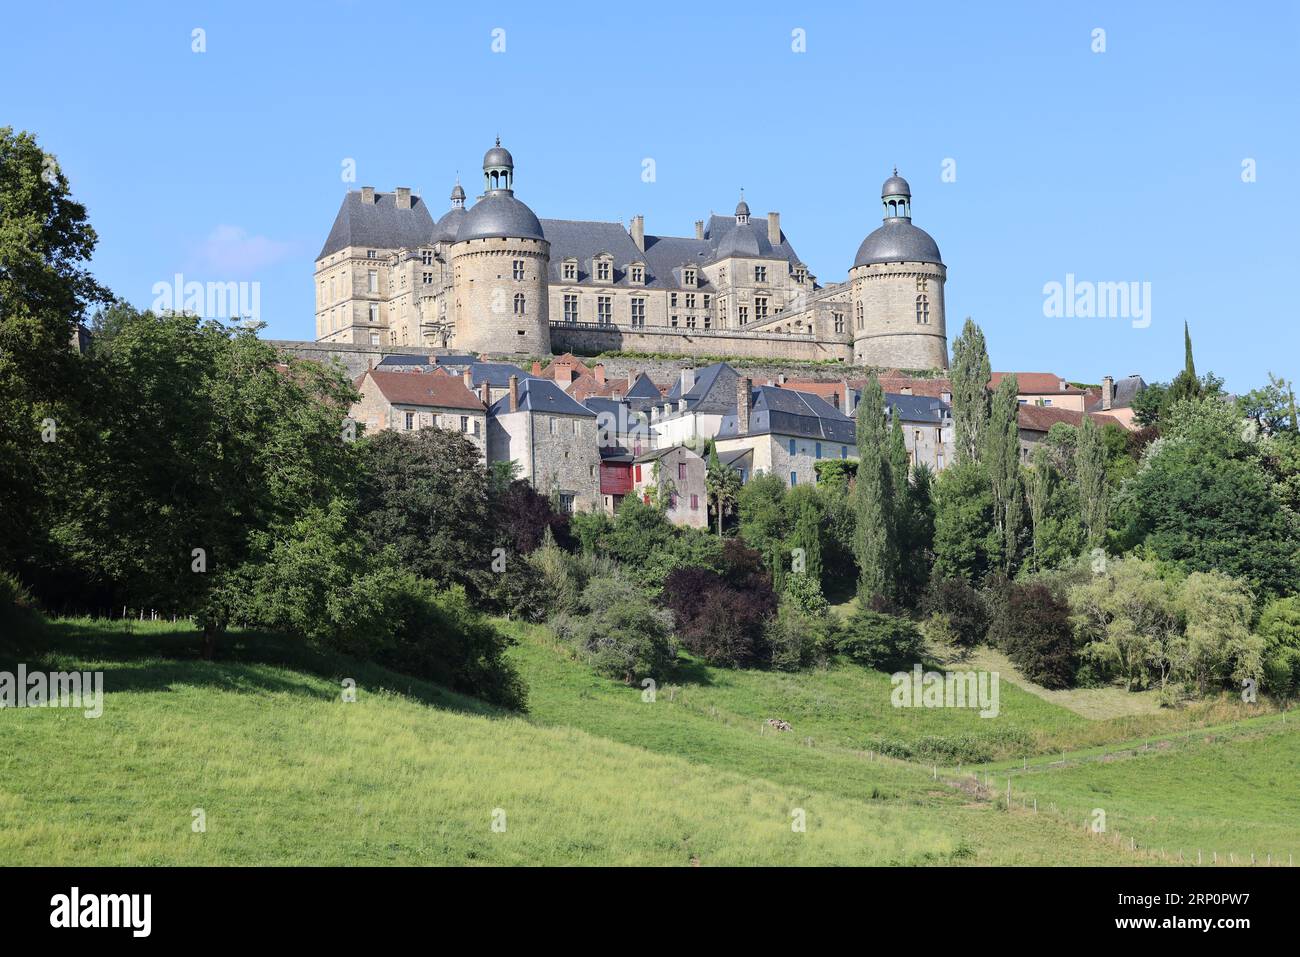 Le château de Hautefort en Dordogne forteresse du Moyen Âge puis demeure de plaisance au 17ème siècle. Architettura, jardin, natura, campagne, environ Foto Stock